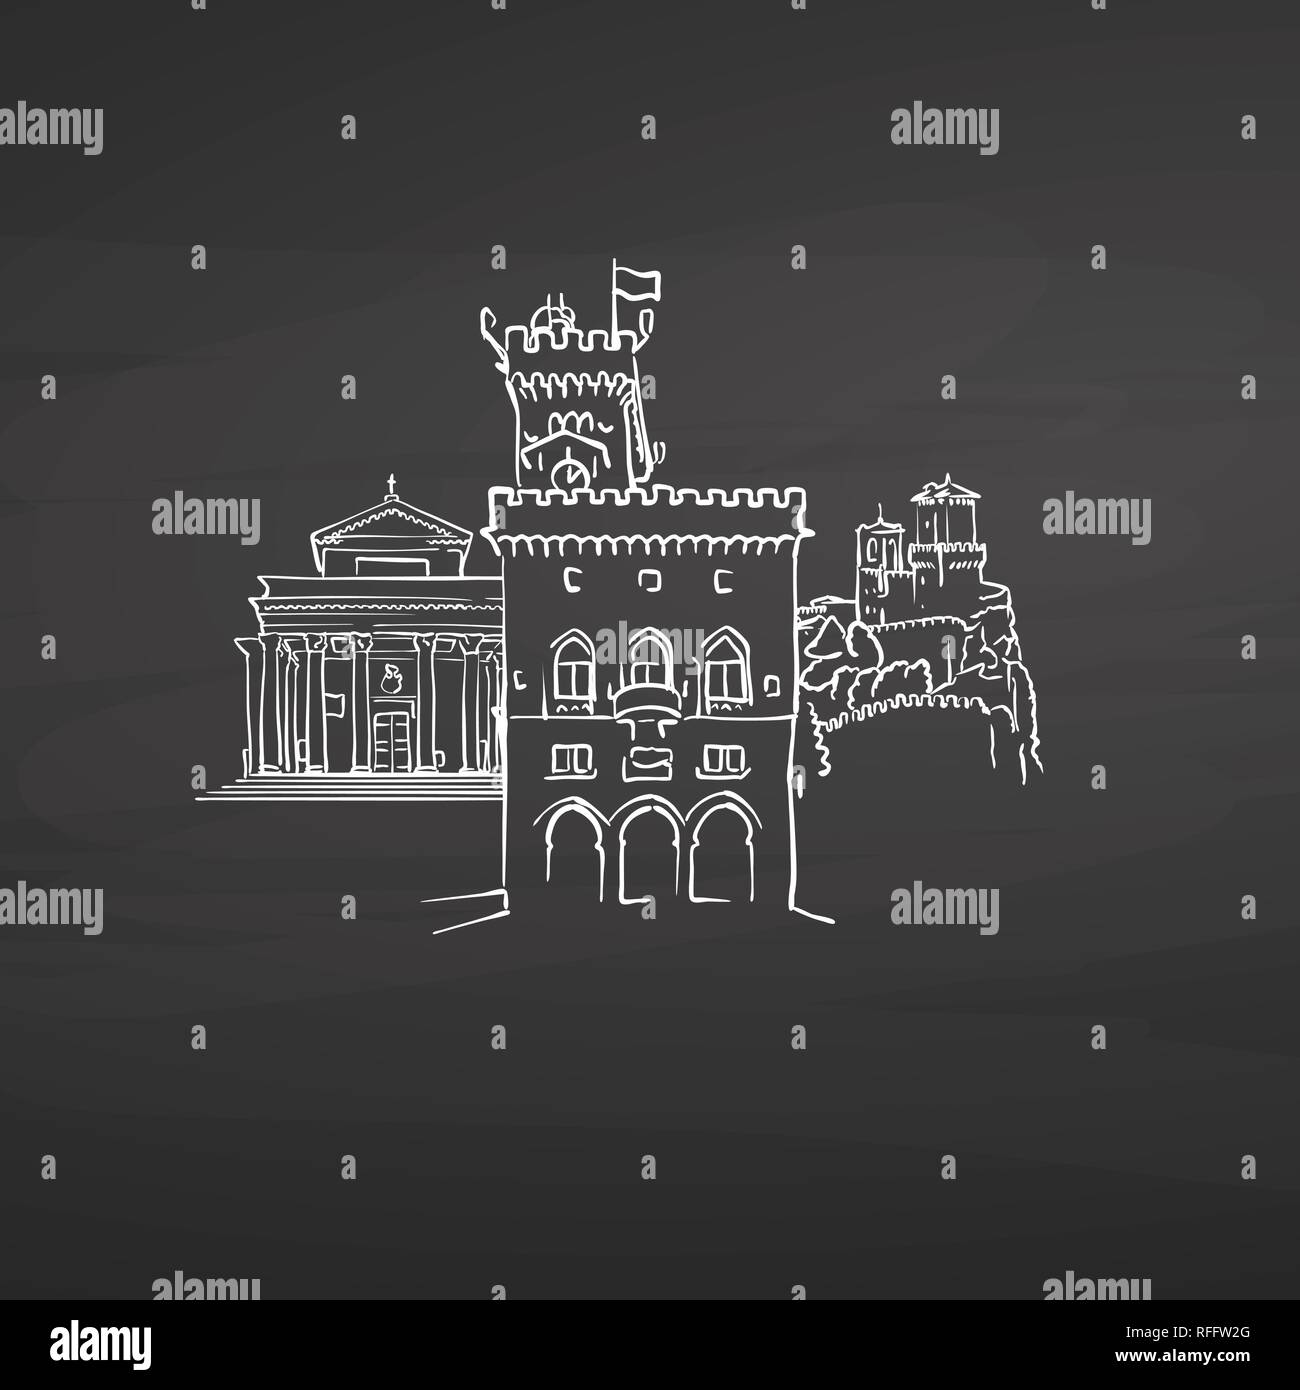 San Marino San Marino Zeichen auf der Tafel. Digitale Kreide gezeichnet Vektor Skizze auf der Tafel. Europäische Hauptstädte Reiseziele. Stock Vektor